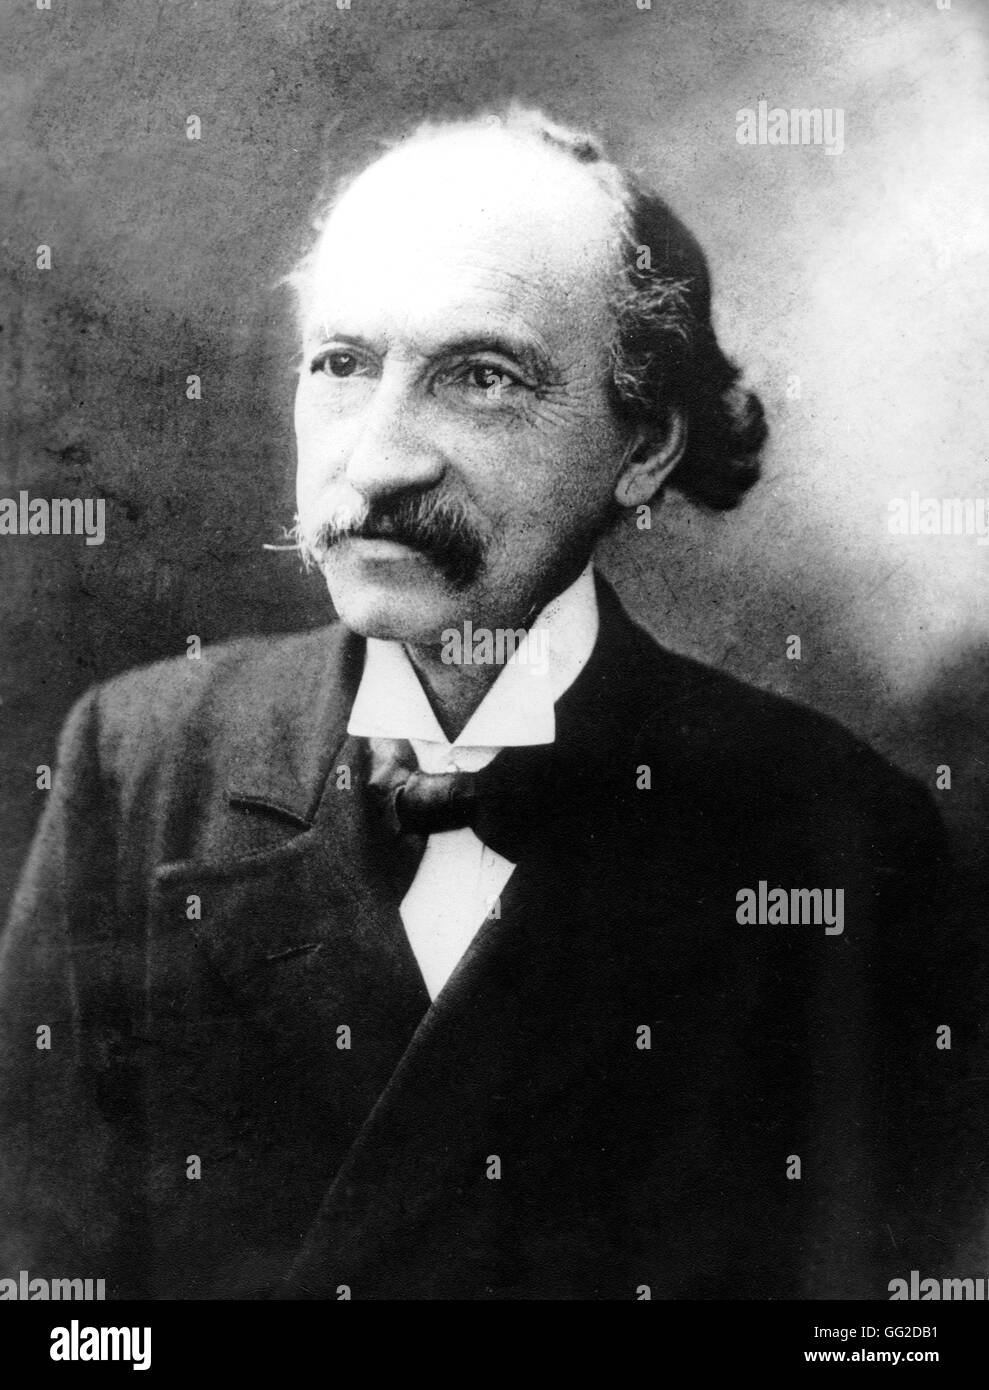 Charles Longuet (1839-1903), französischer Sozialist, Mitglied der Association Internationale des Travailleurs (Schwiegersohn von Karl Marx, Ehemann von Jenny Marx) 19. Jahrhundert Frankreich Stockfoto